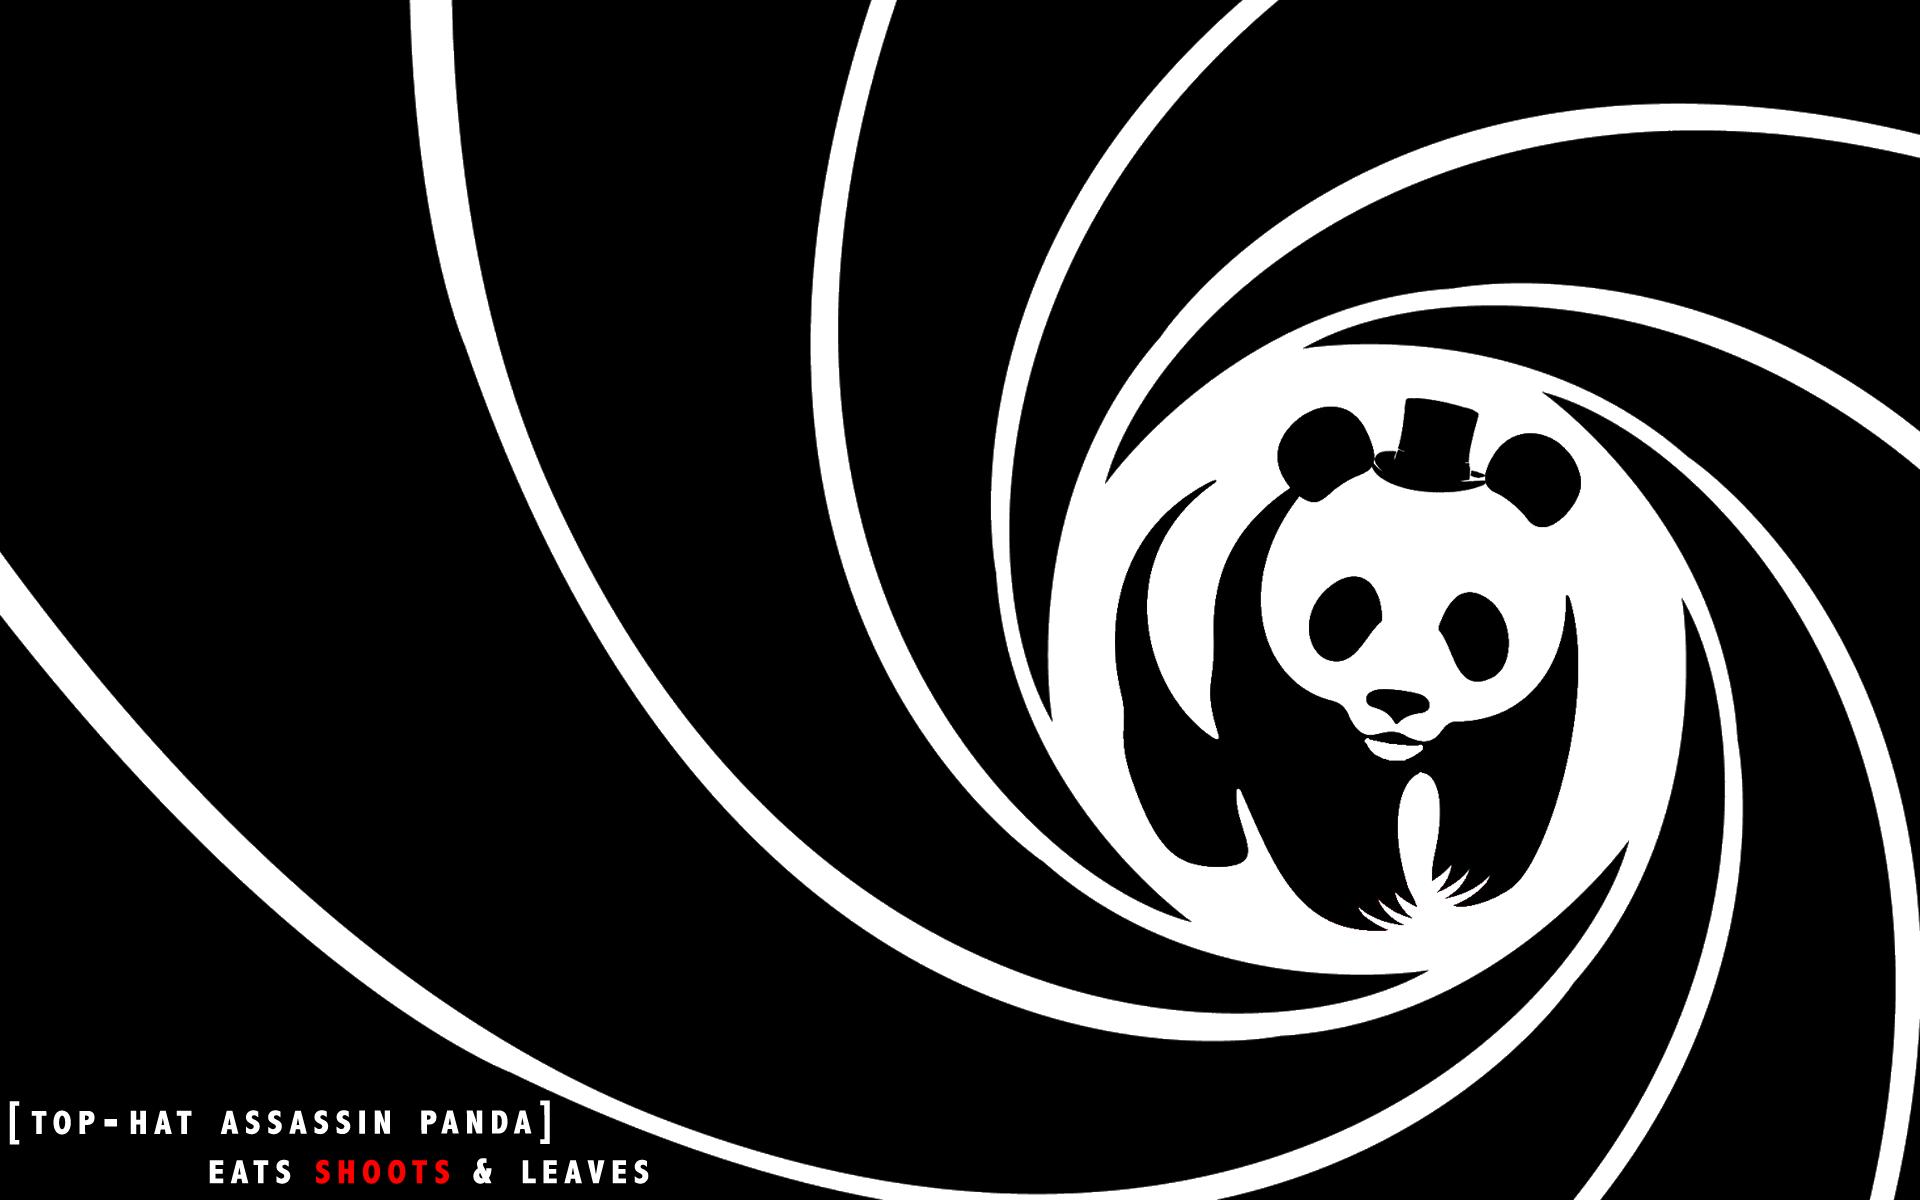 Black Spiral Logo - Wallpaper : illustration, humor, spiral, logo, circle, panda, parody ...